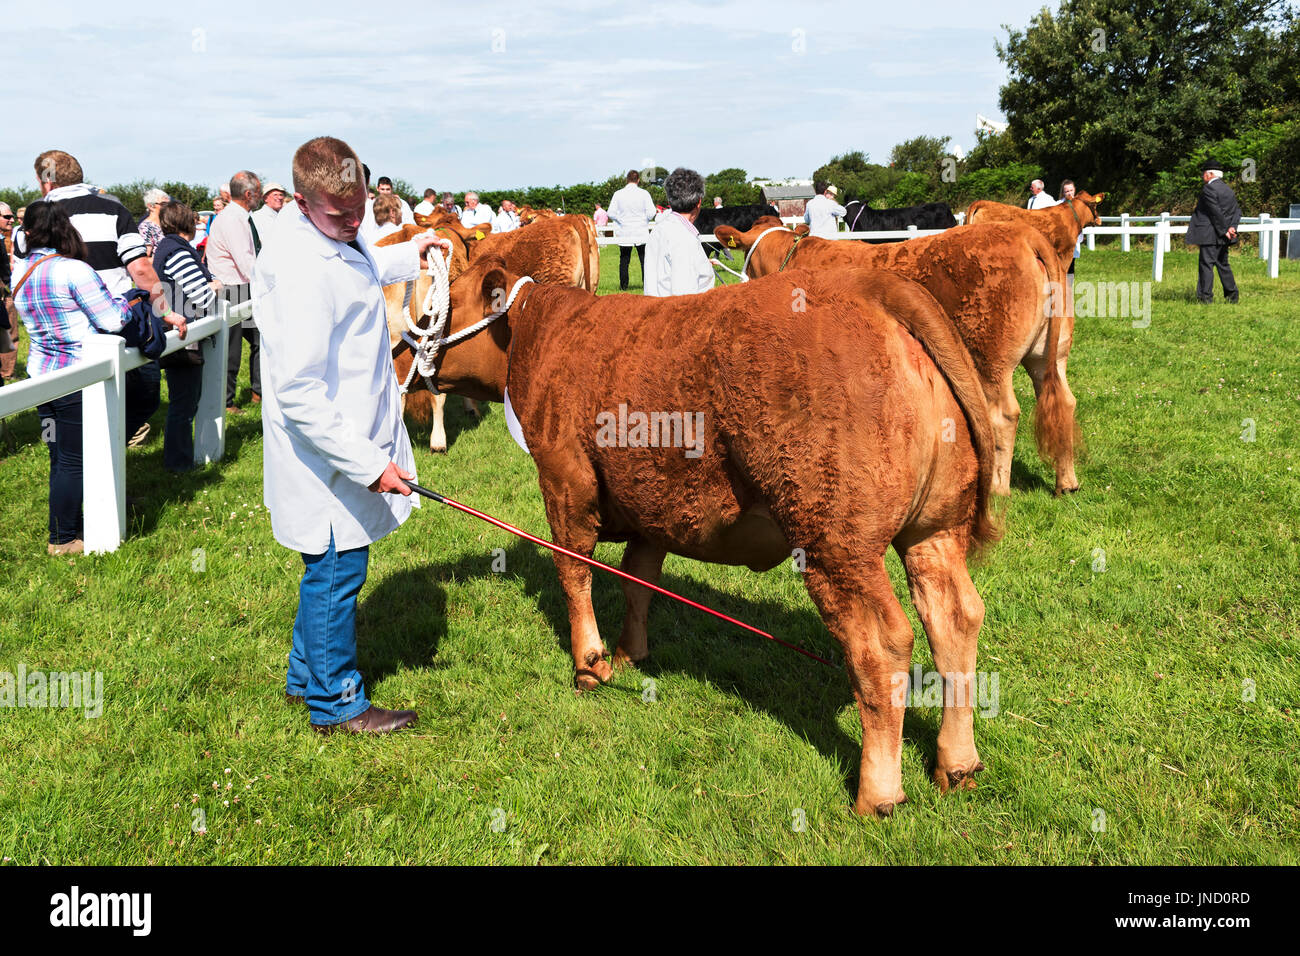 Le mucche in mostra l'anello in un paesaggio rurale country fair in Cornovaglia, Inghilterra, Regno Unito. Foto Stock